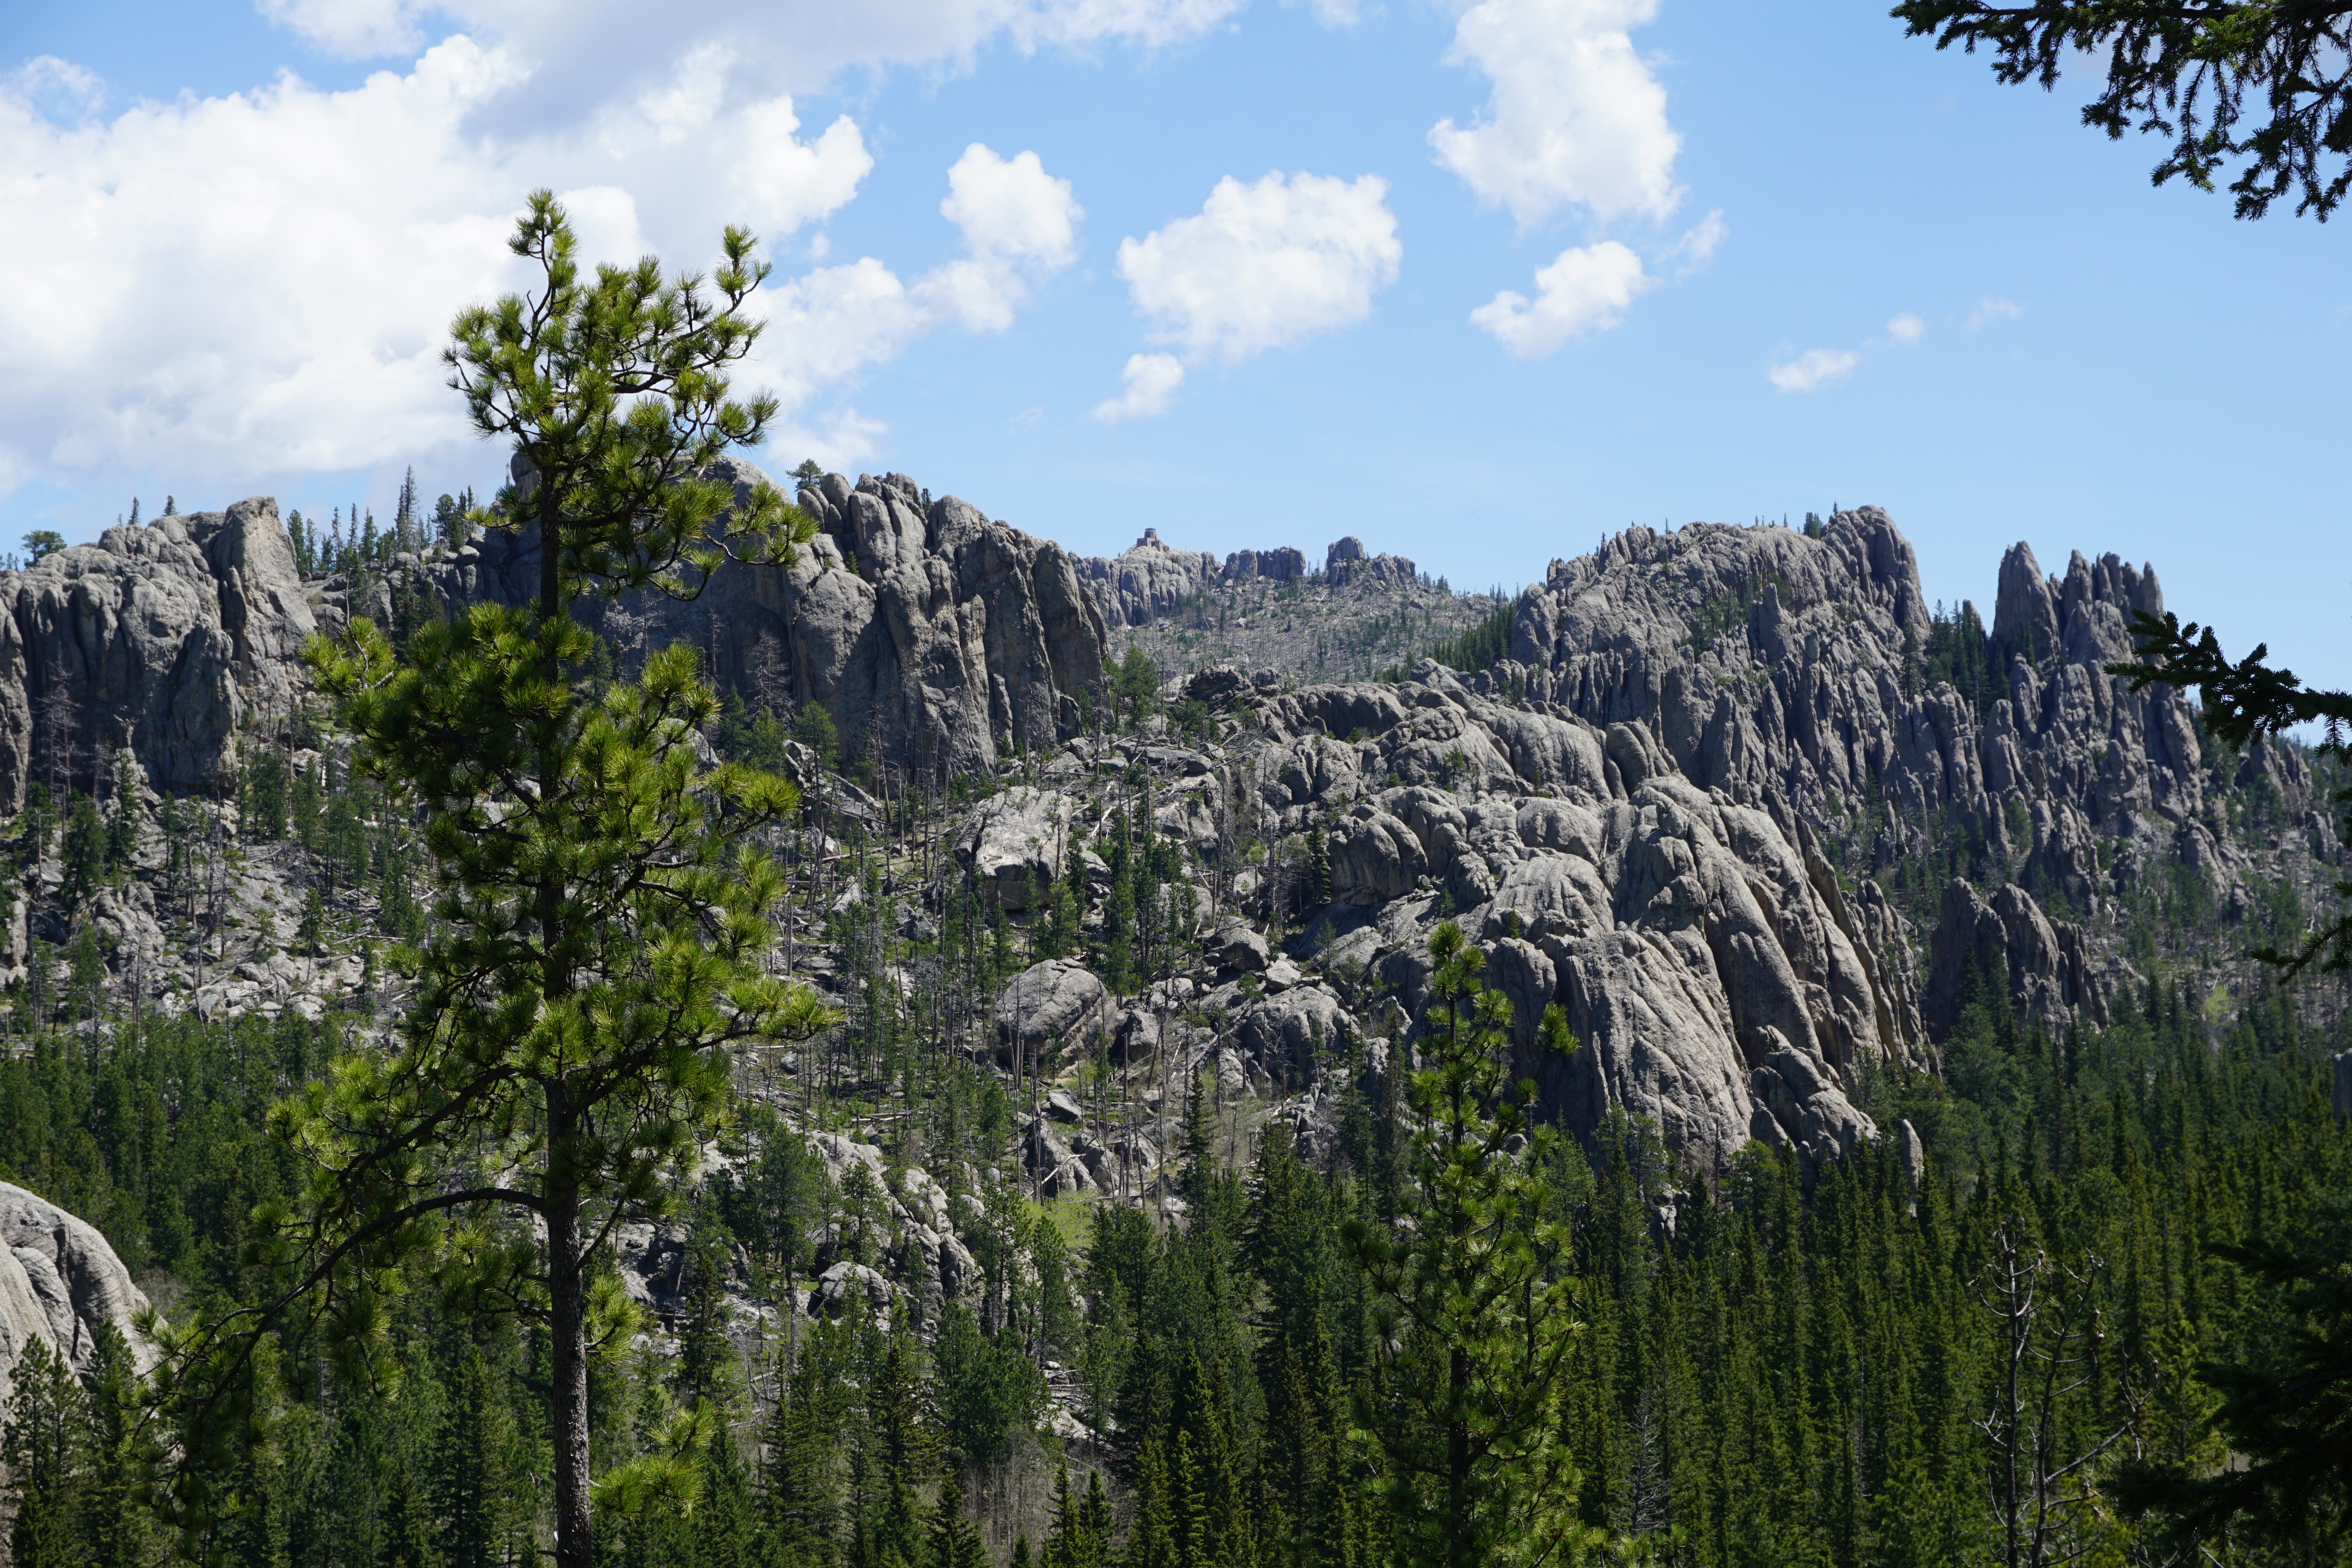 View of Black Elk Peak and Harney Lookout